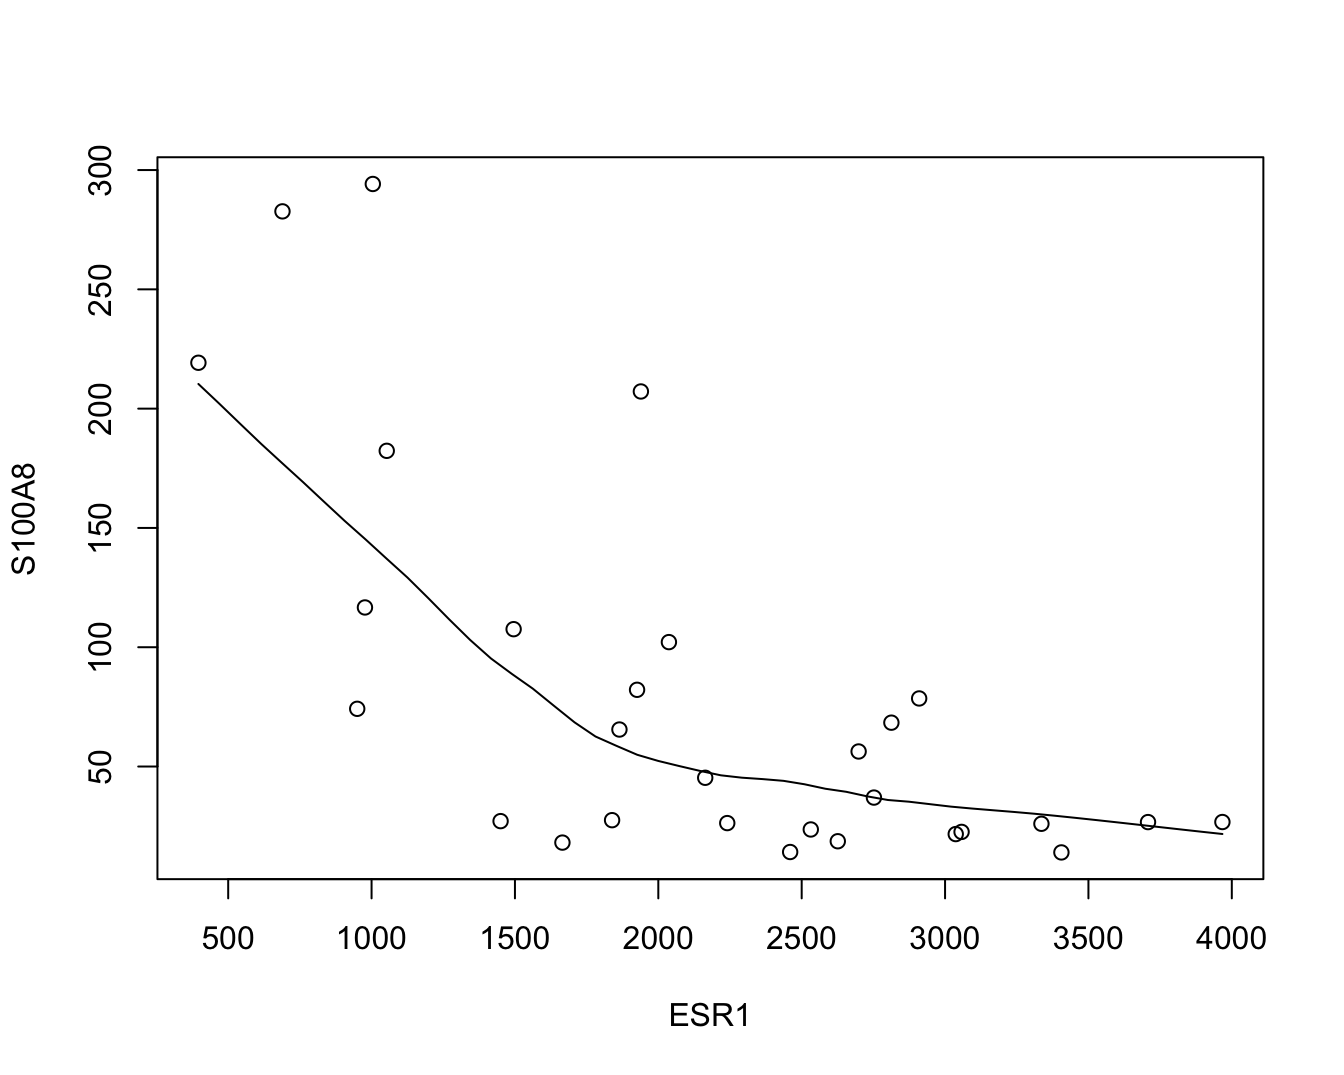 Scatterplot voor S100A8 expressie in functie van de ESR1 expressie met smoother die het verband tussen beide genen samenvat (na verwijdering van outliers in de S100A8 expressie, merk op dat we deze outliers in principe niet mochten verwijderen uit de dataset).